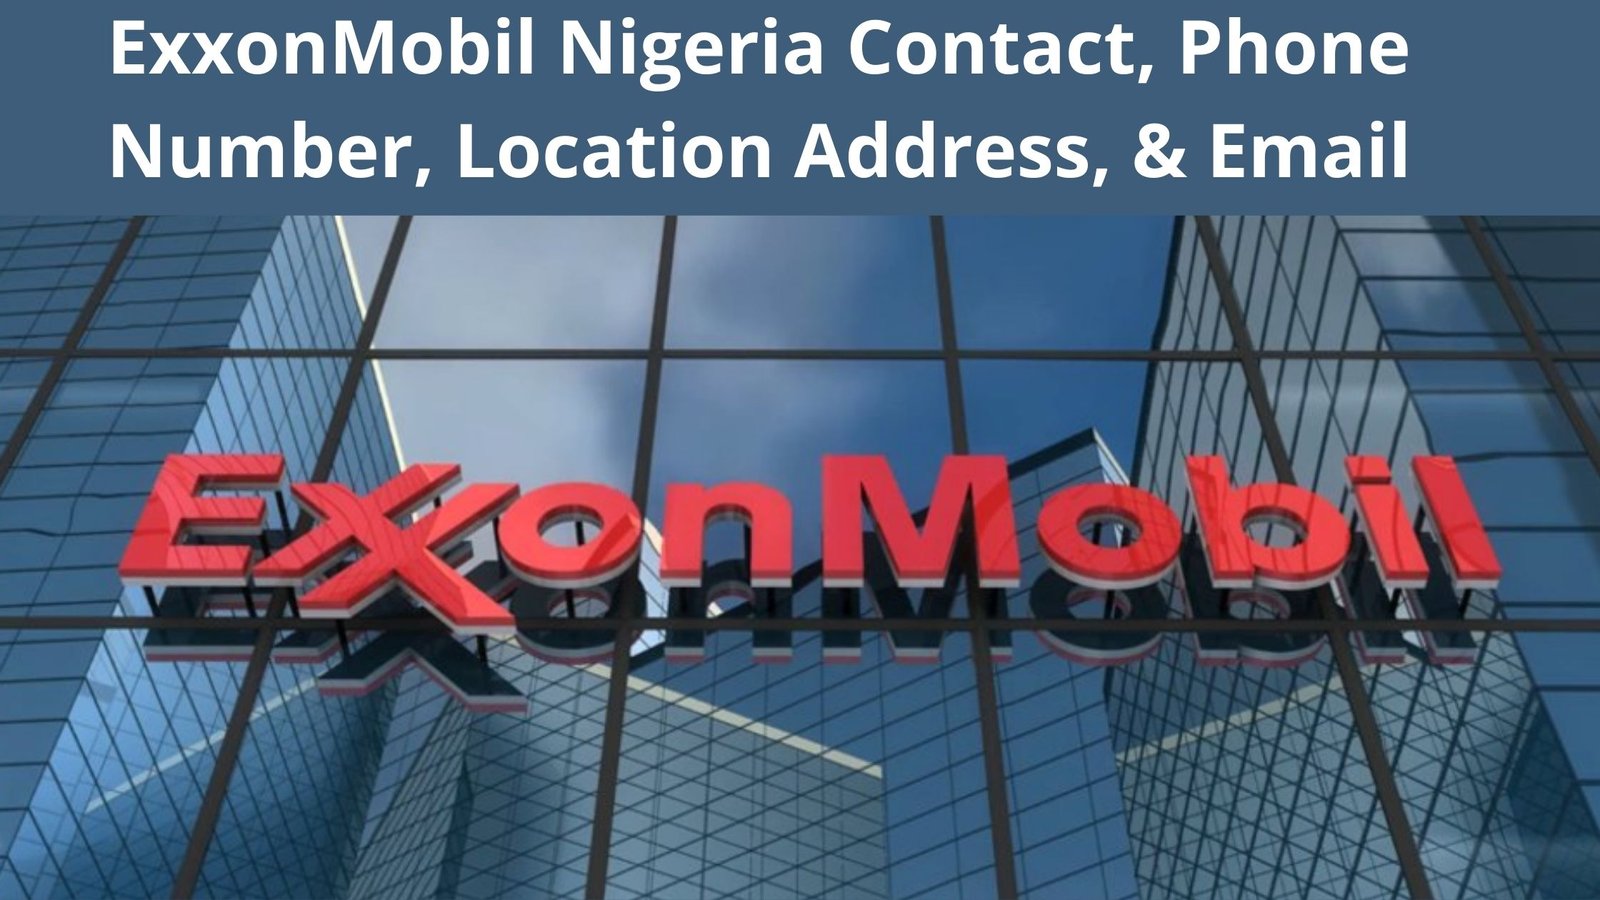 ExxonMobil Nigeria Contact